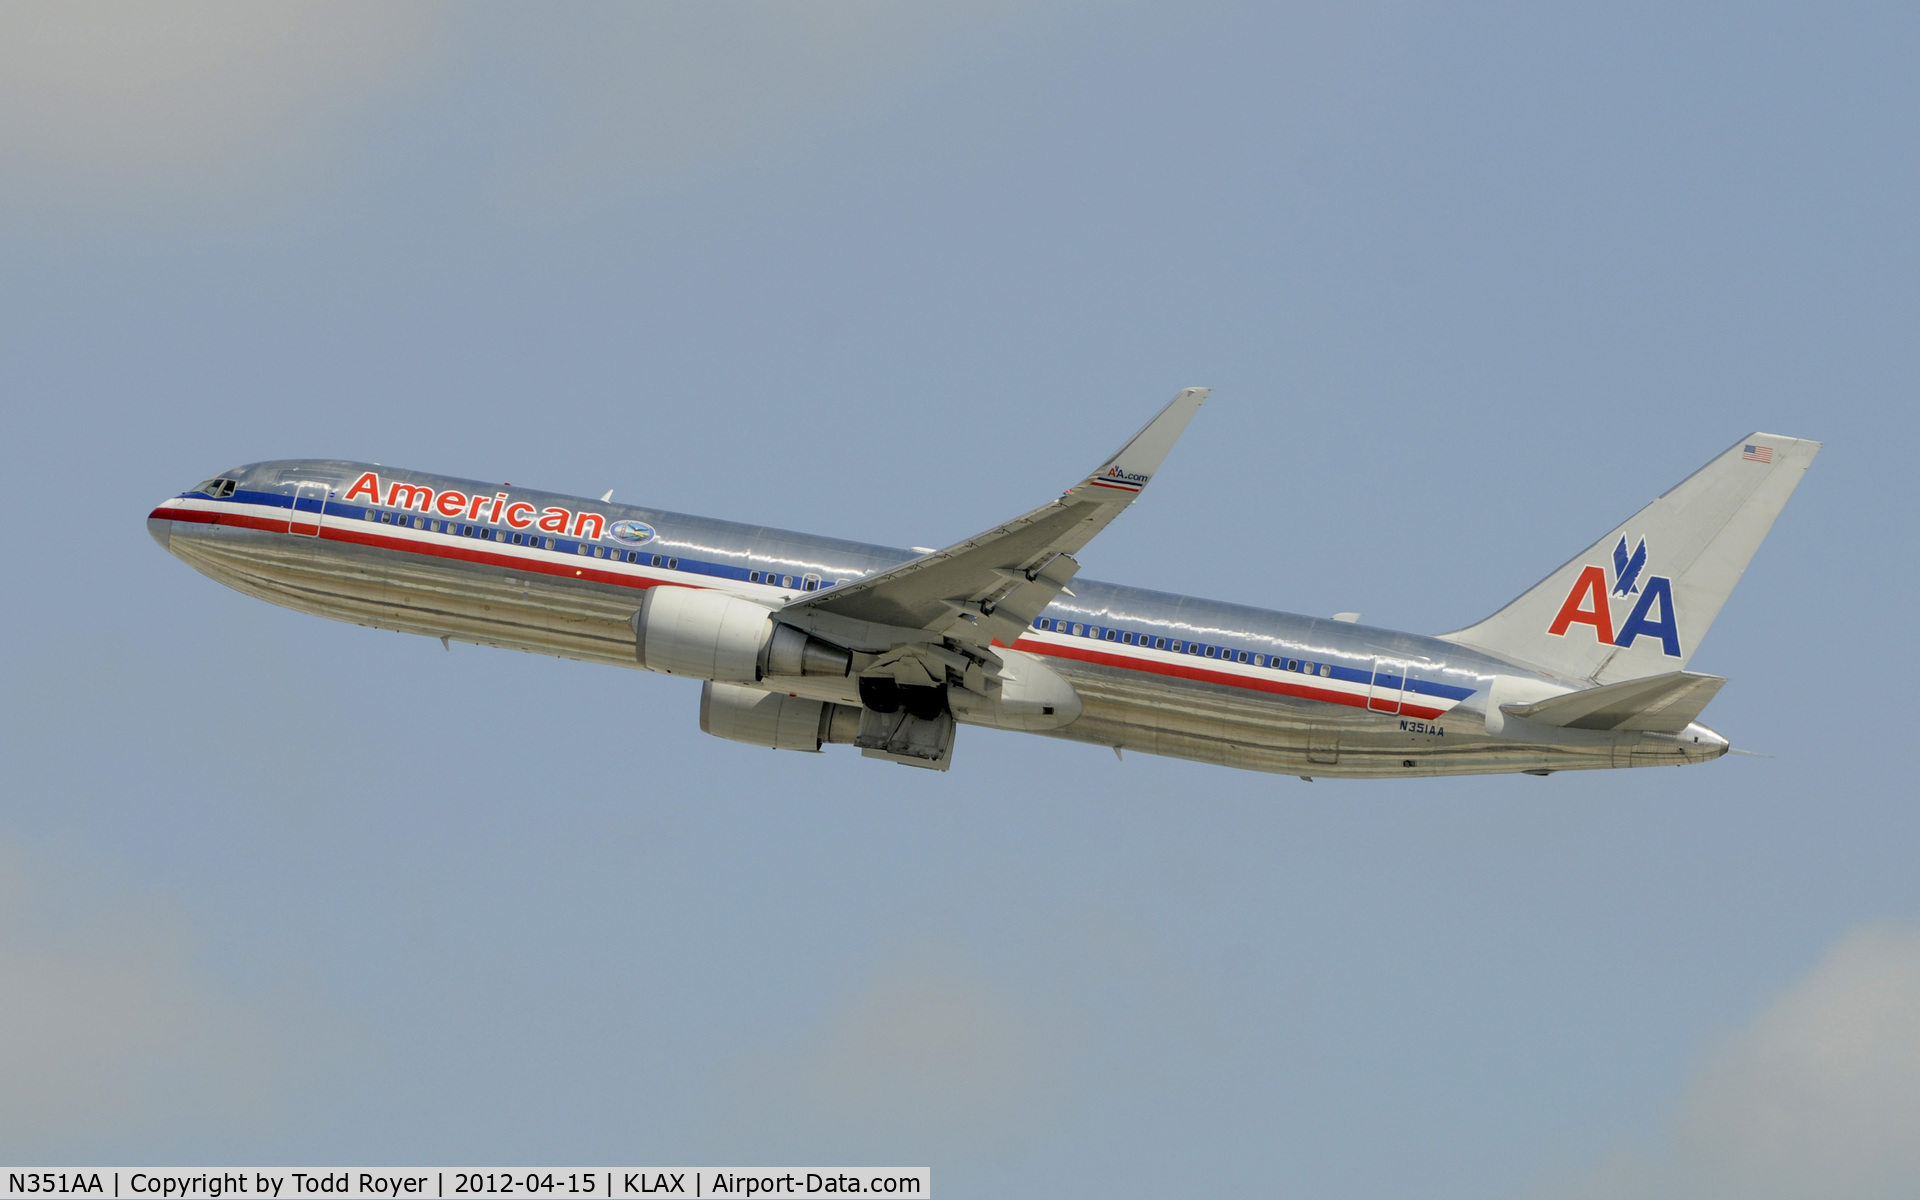 N351AA, 1988 Boeing 767-323 C/N 24032, Departing LAX on 25R